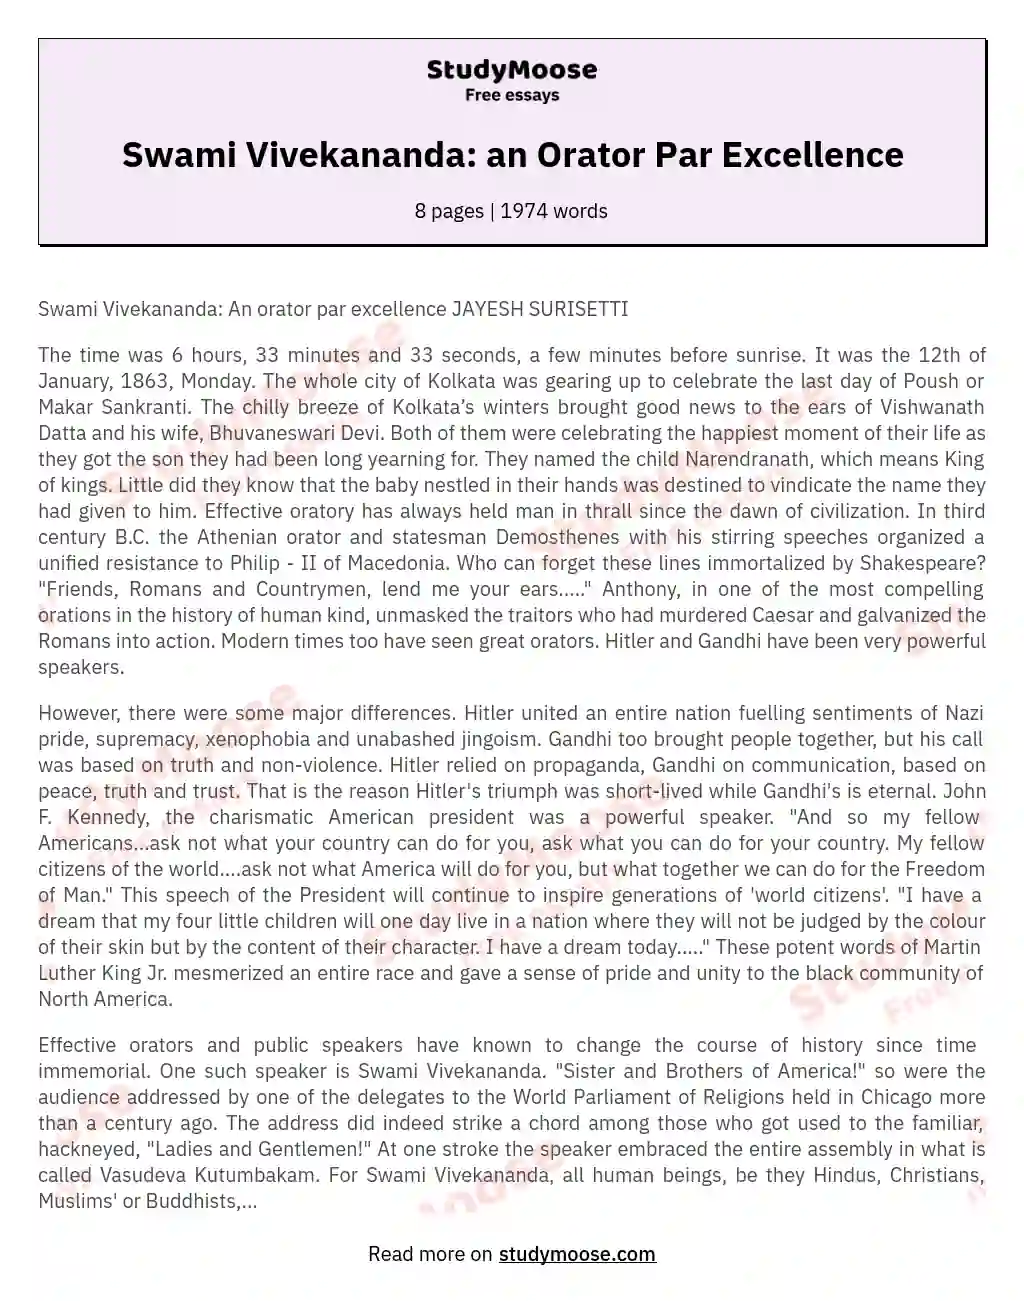 Swami Vivekananda: an Orator Par Excellence